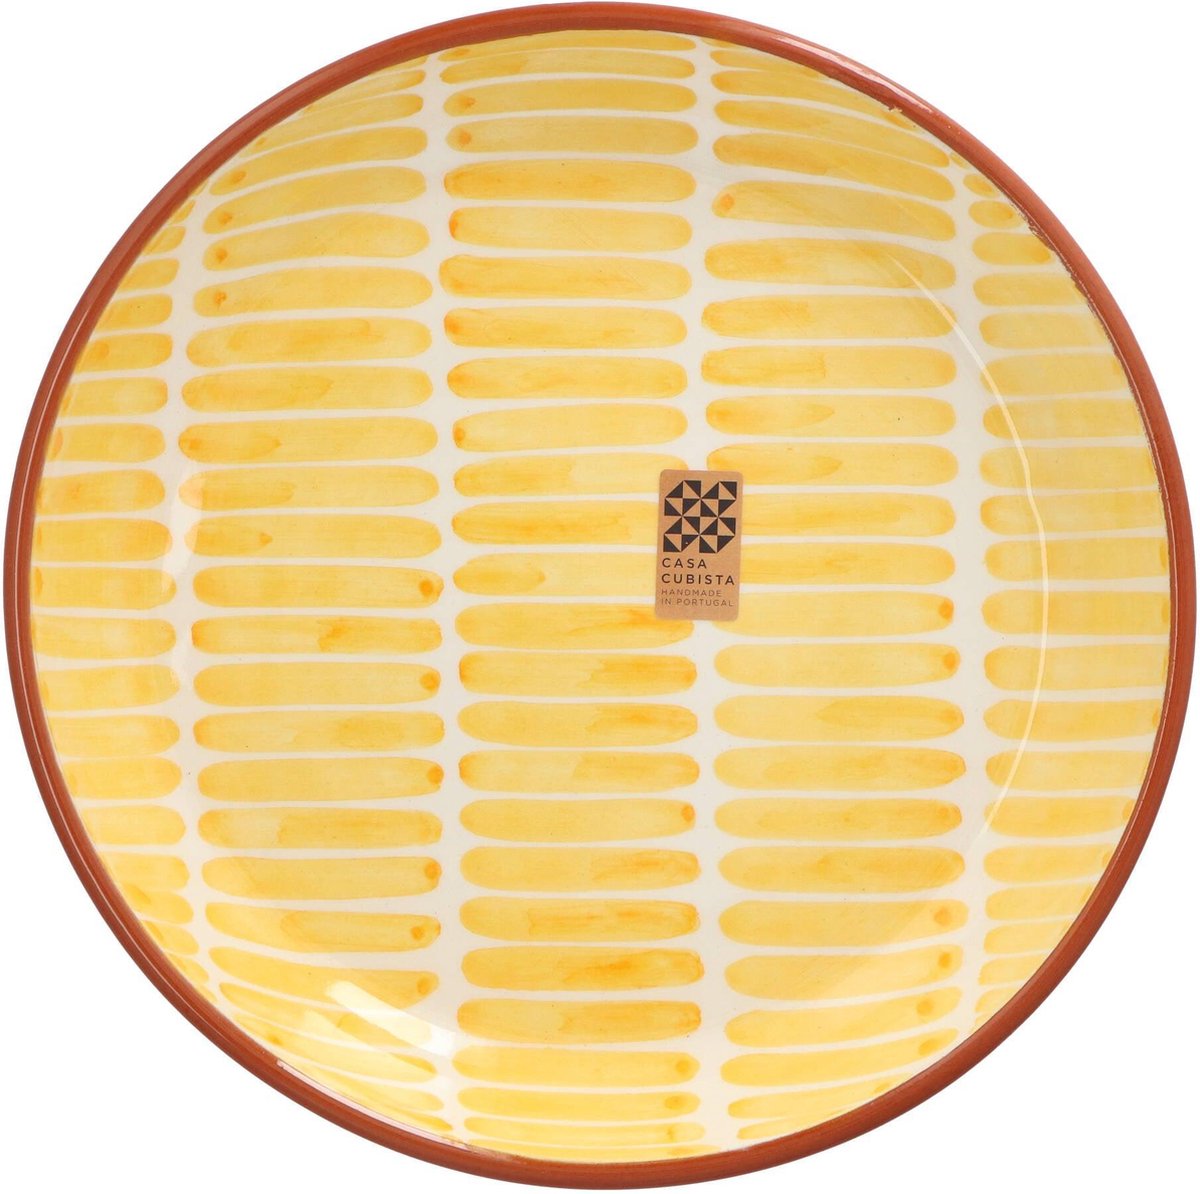 Casa Cubista - Schaal met streepjespatroon geel 27cm - Schalen